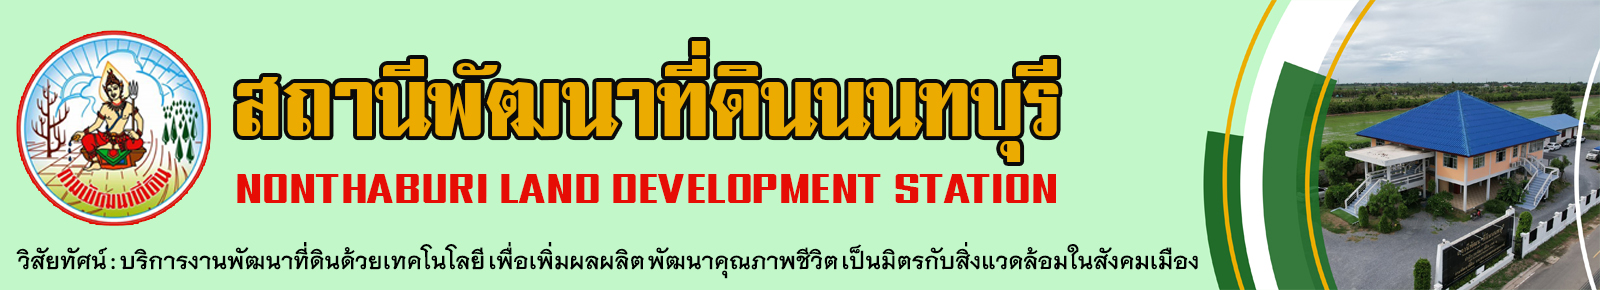 ปกเว็บไซต์ สถานีพัฒนาที่ดินนนทบุรี